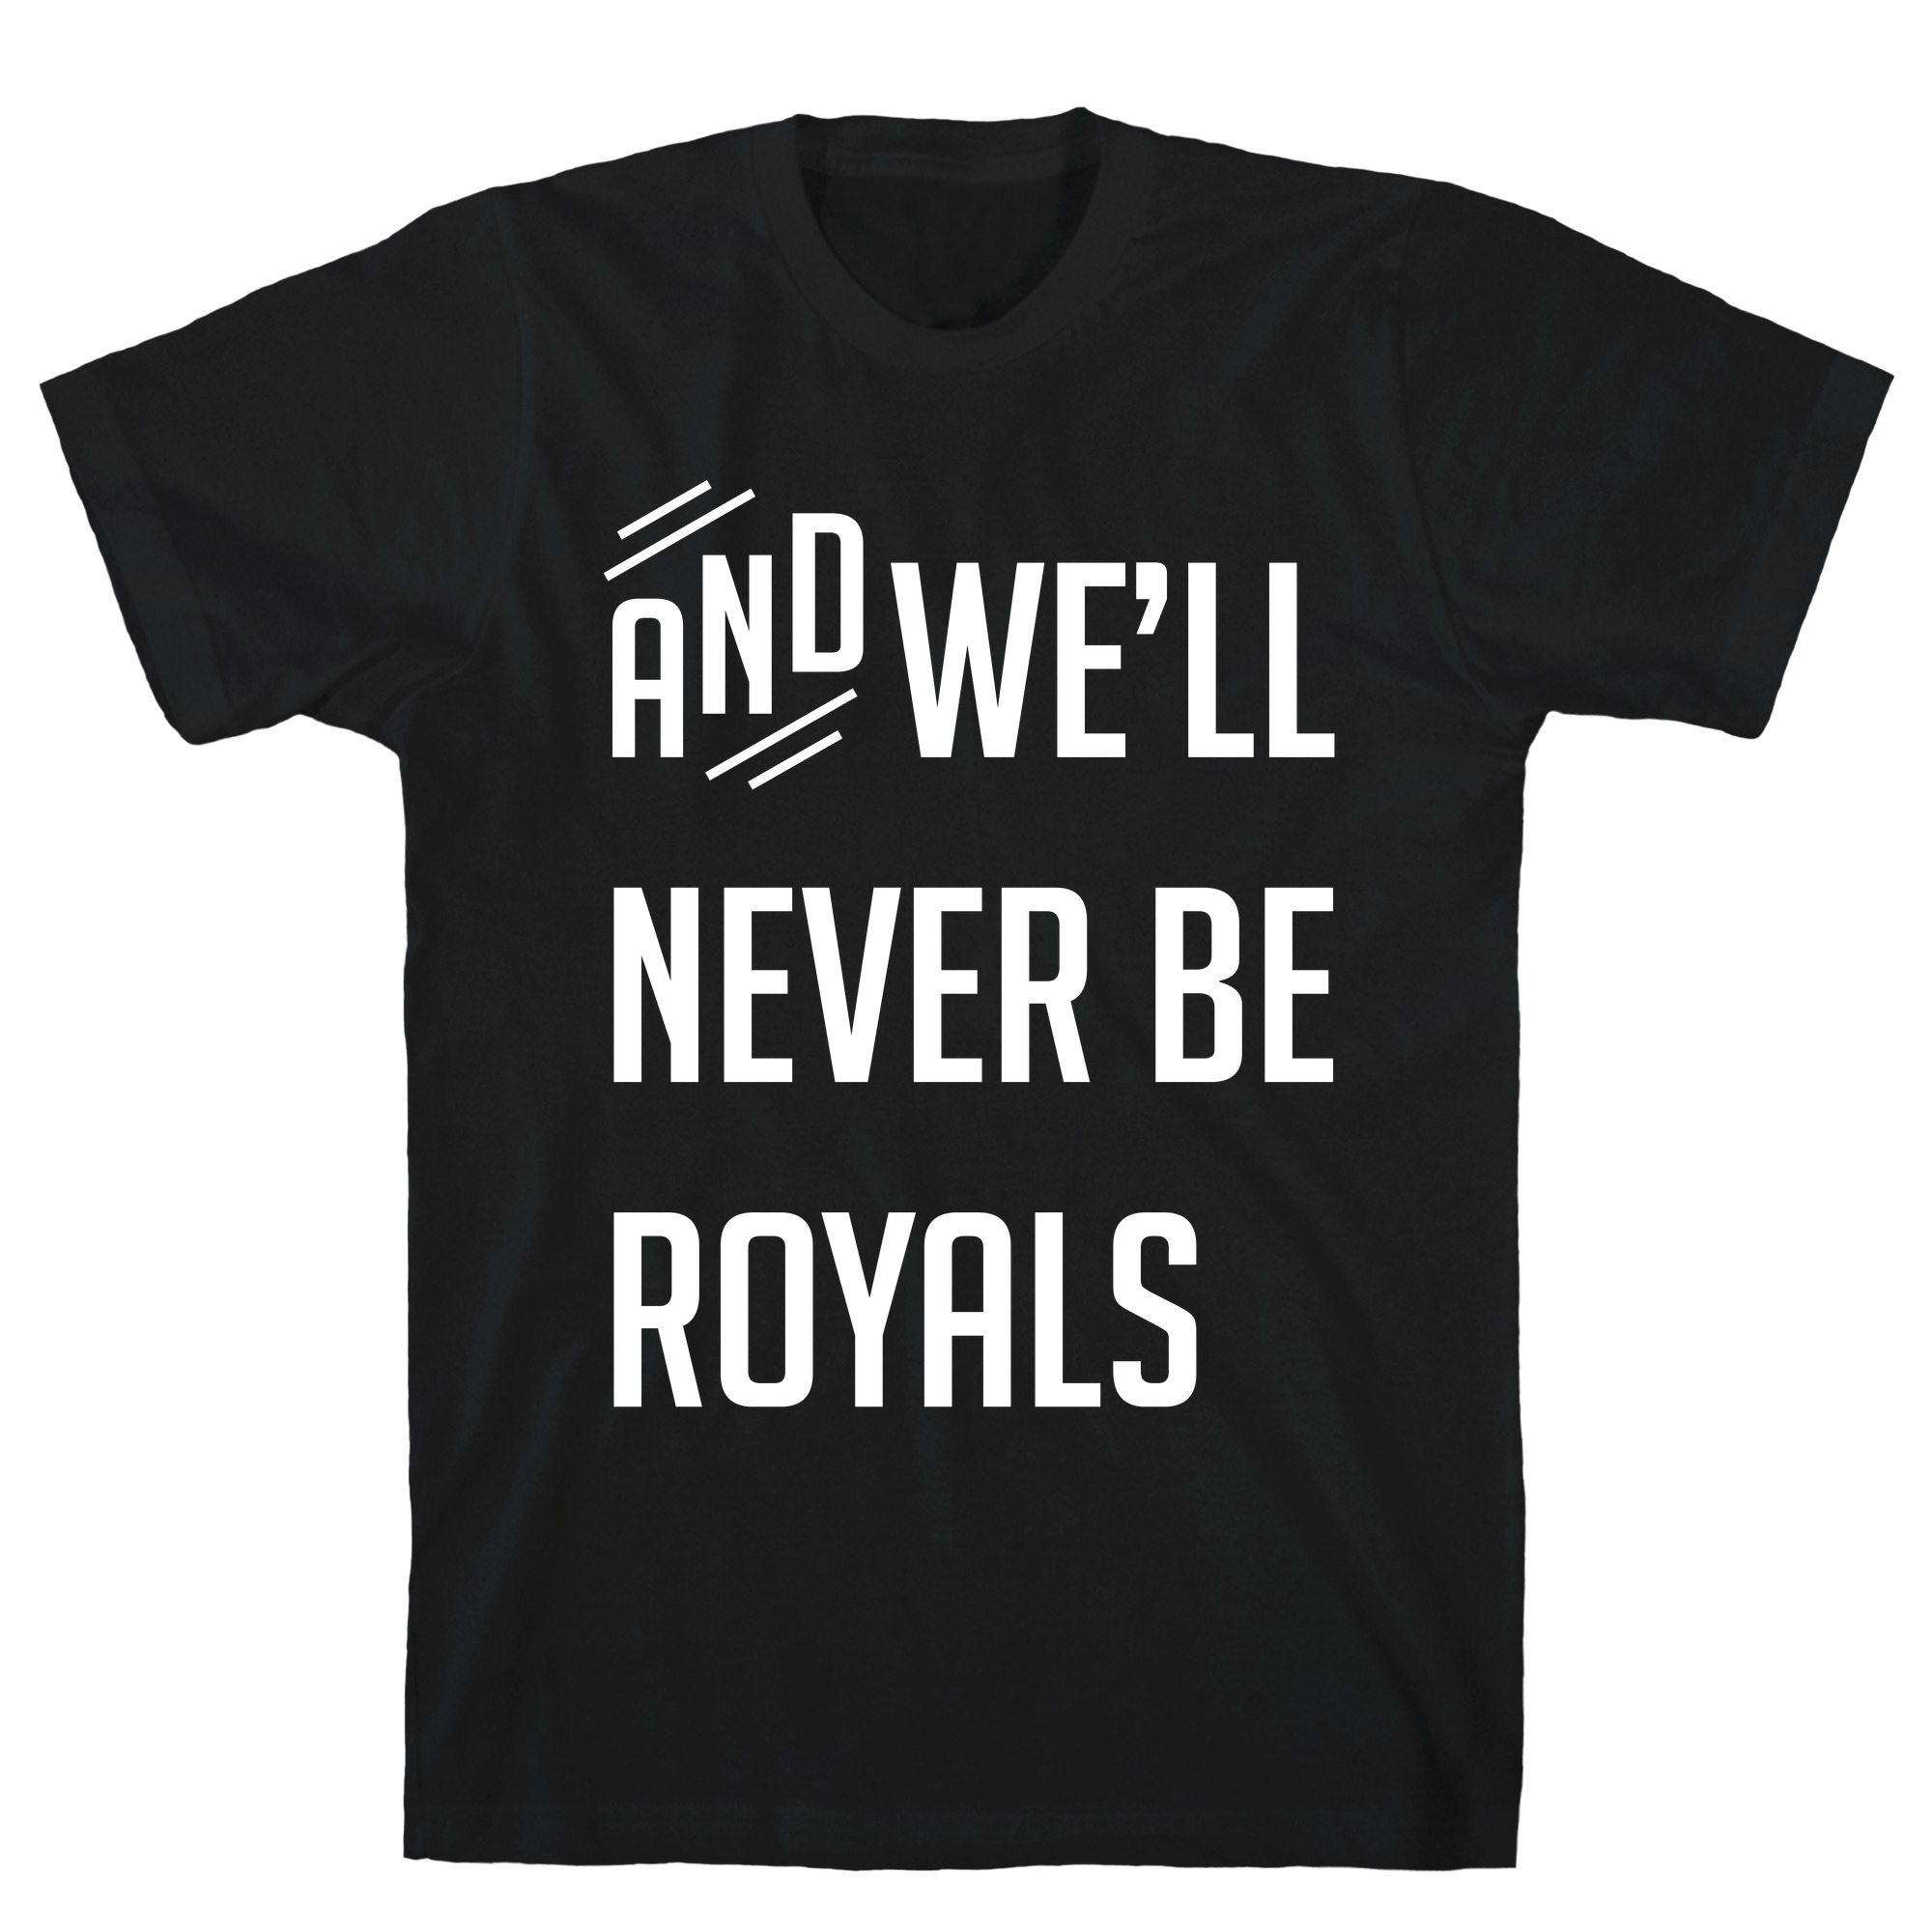 cool royals shirts